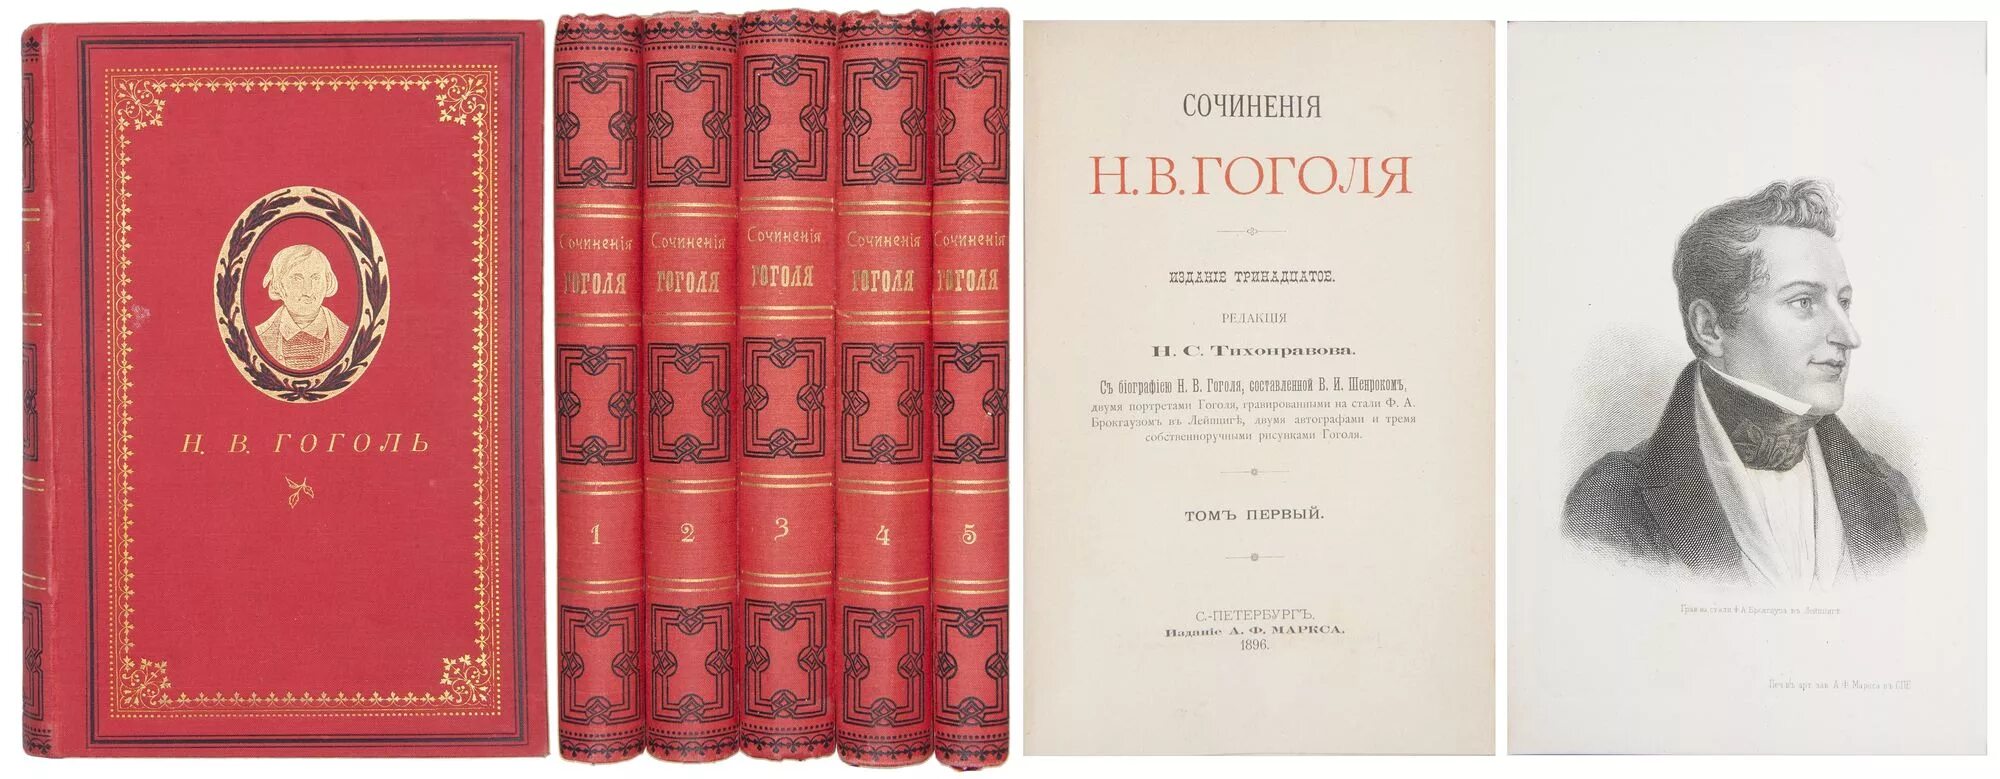 Книги про гоголя. Гоголь книги. Гоголь антикварная книга. Н.В. Гоголь ’’портрет’’ книга. Гоголь н.в. книги коллаж.